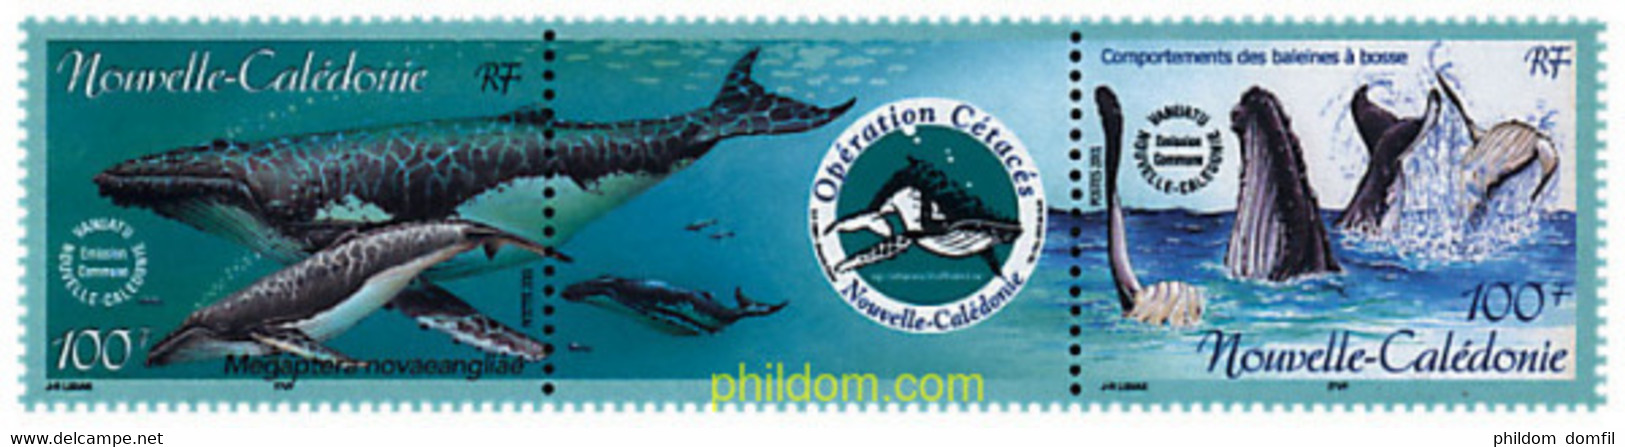 5405 MNH NUEVA CALEDONIA 2001 OPERACION CETACEOS - Gebruikt